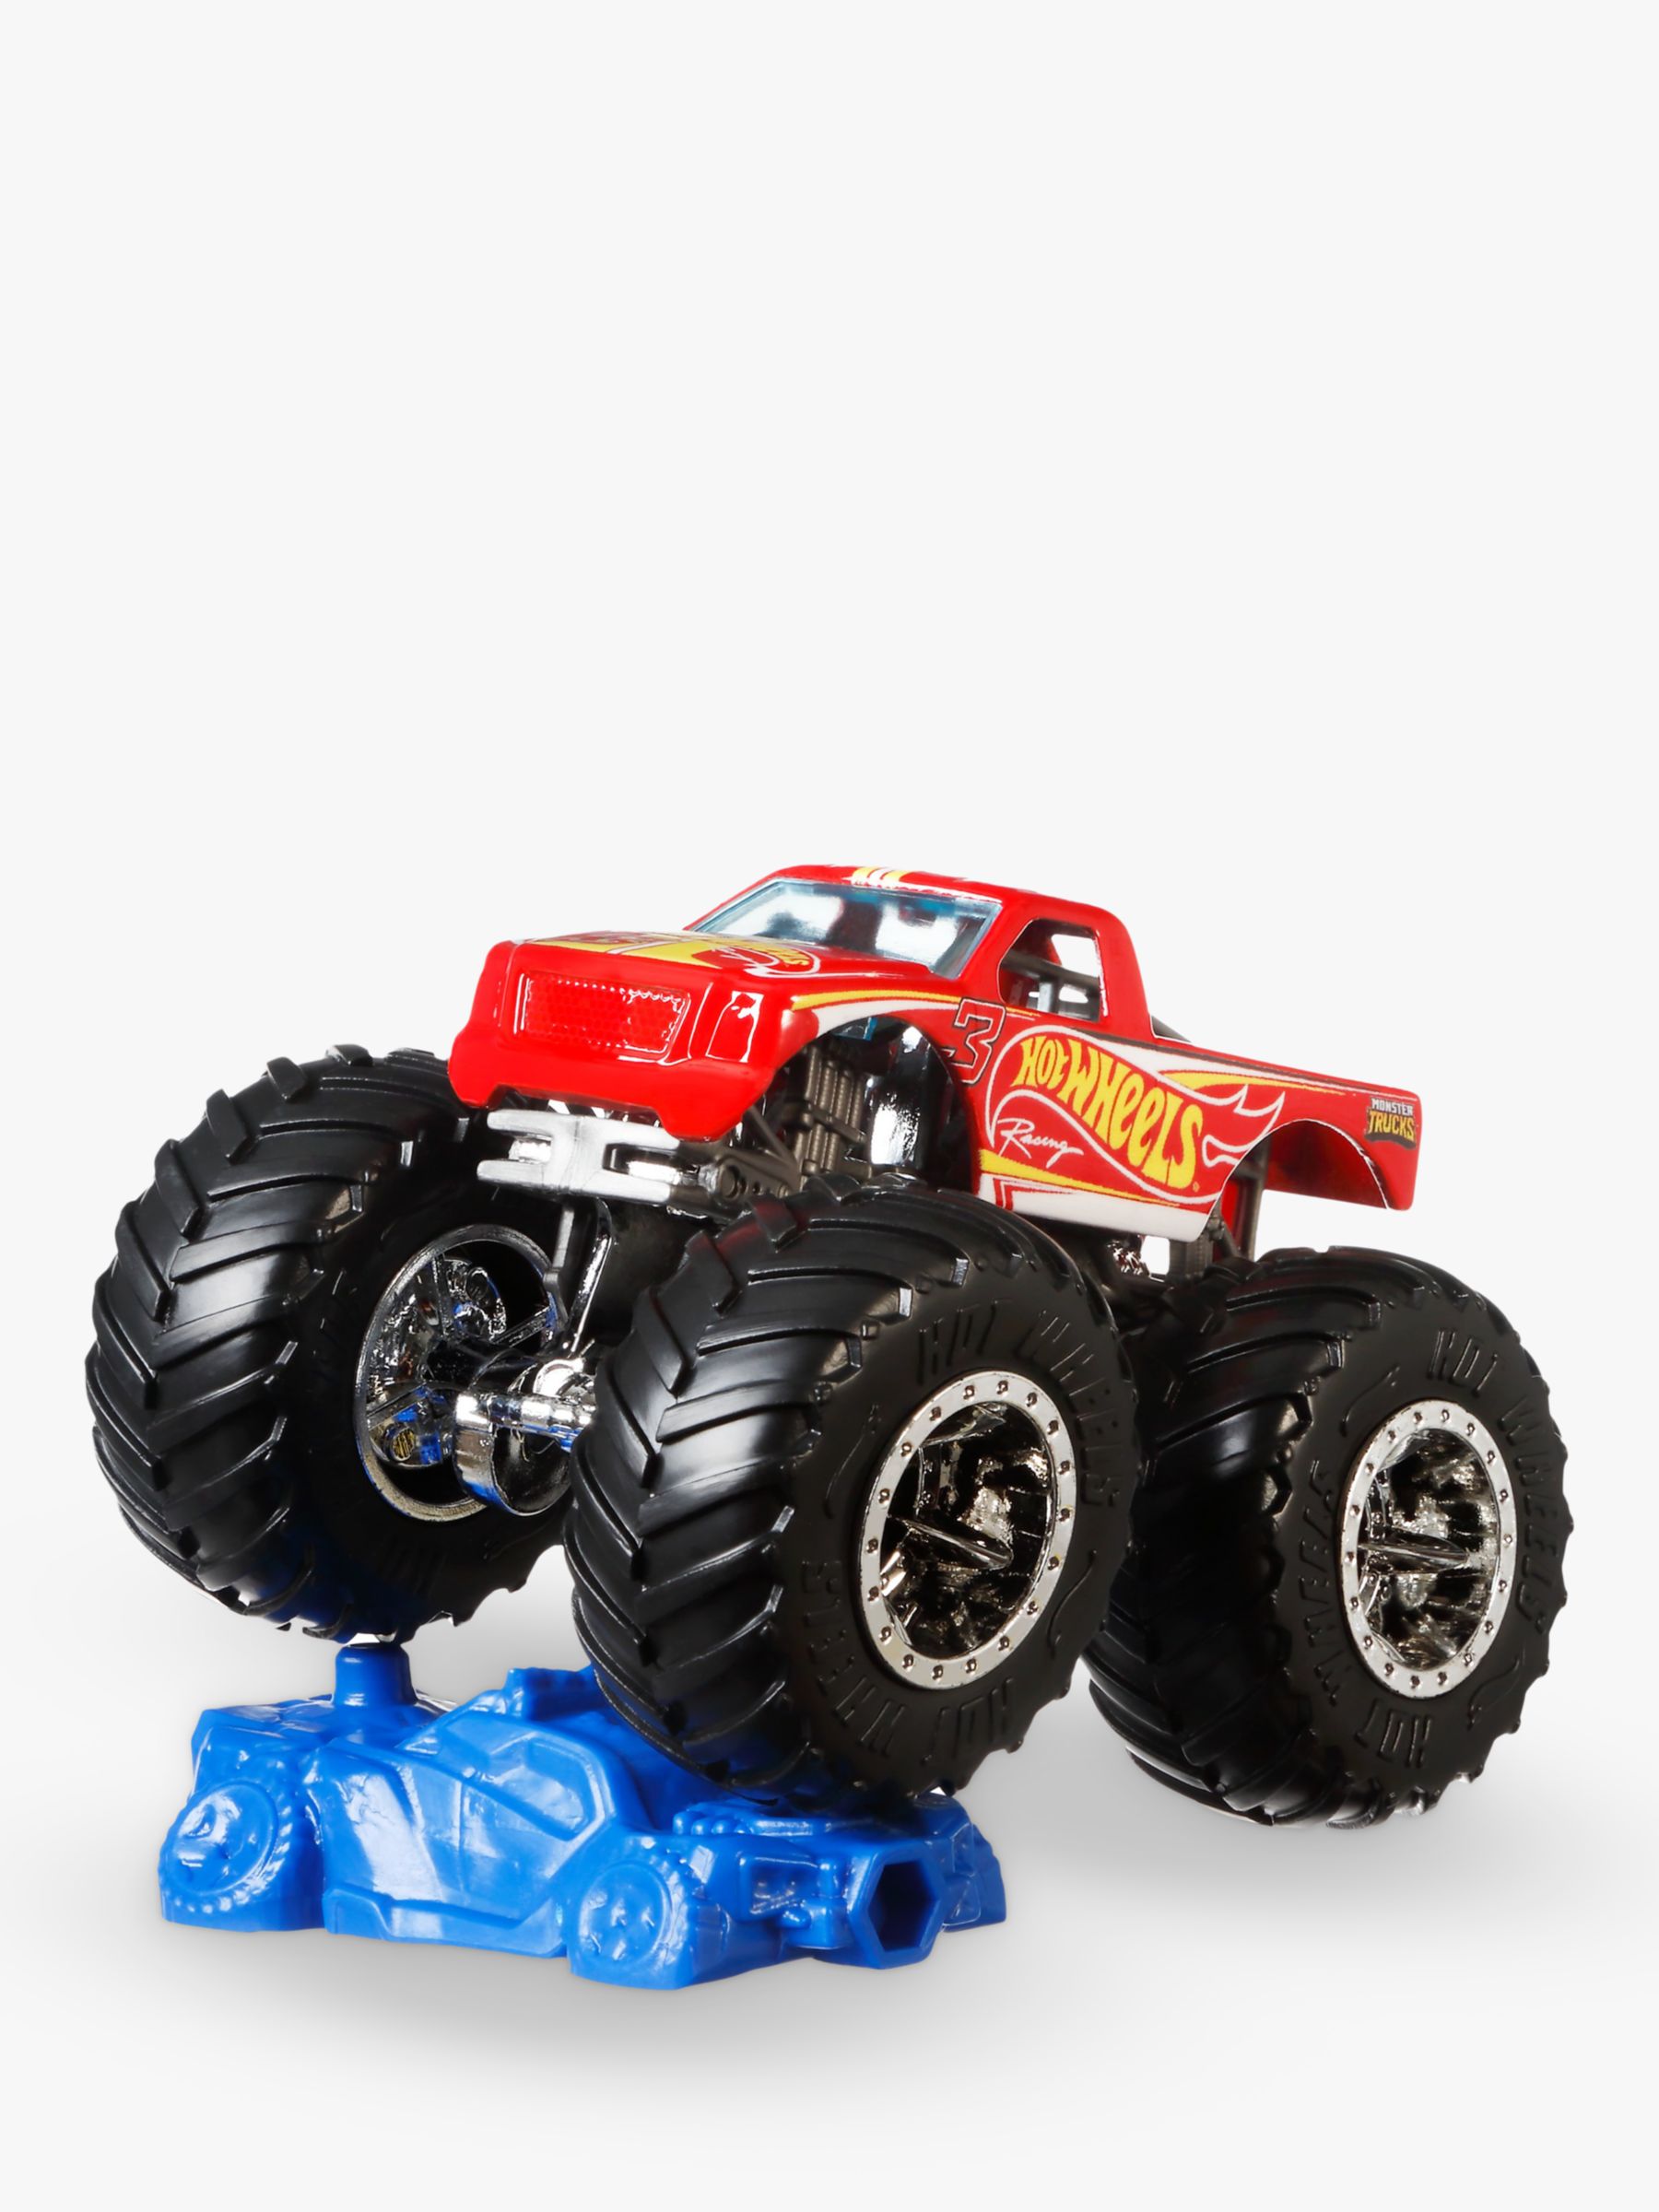 buy hot wheels monster trucks